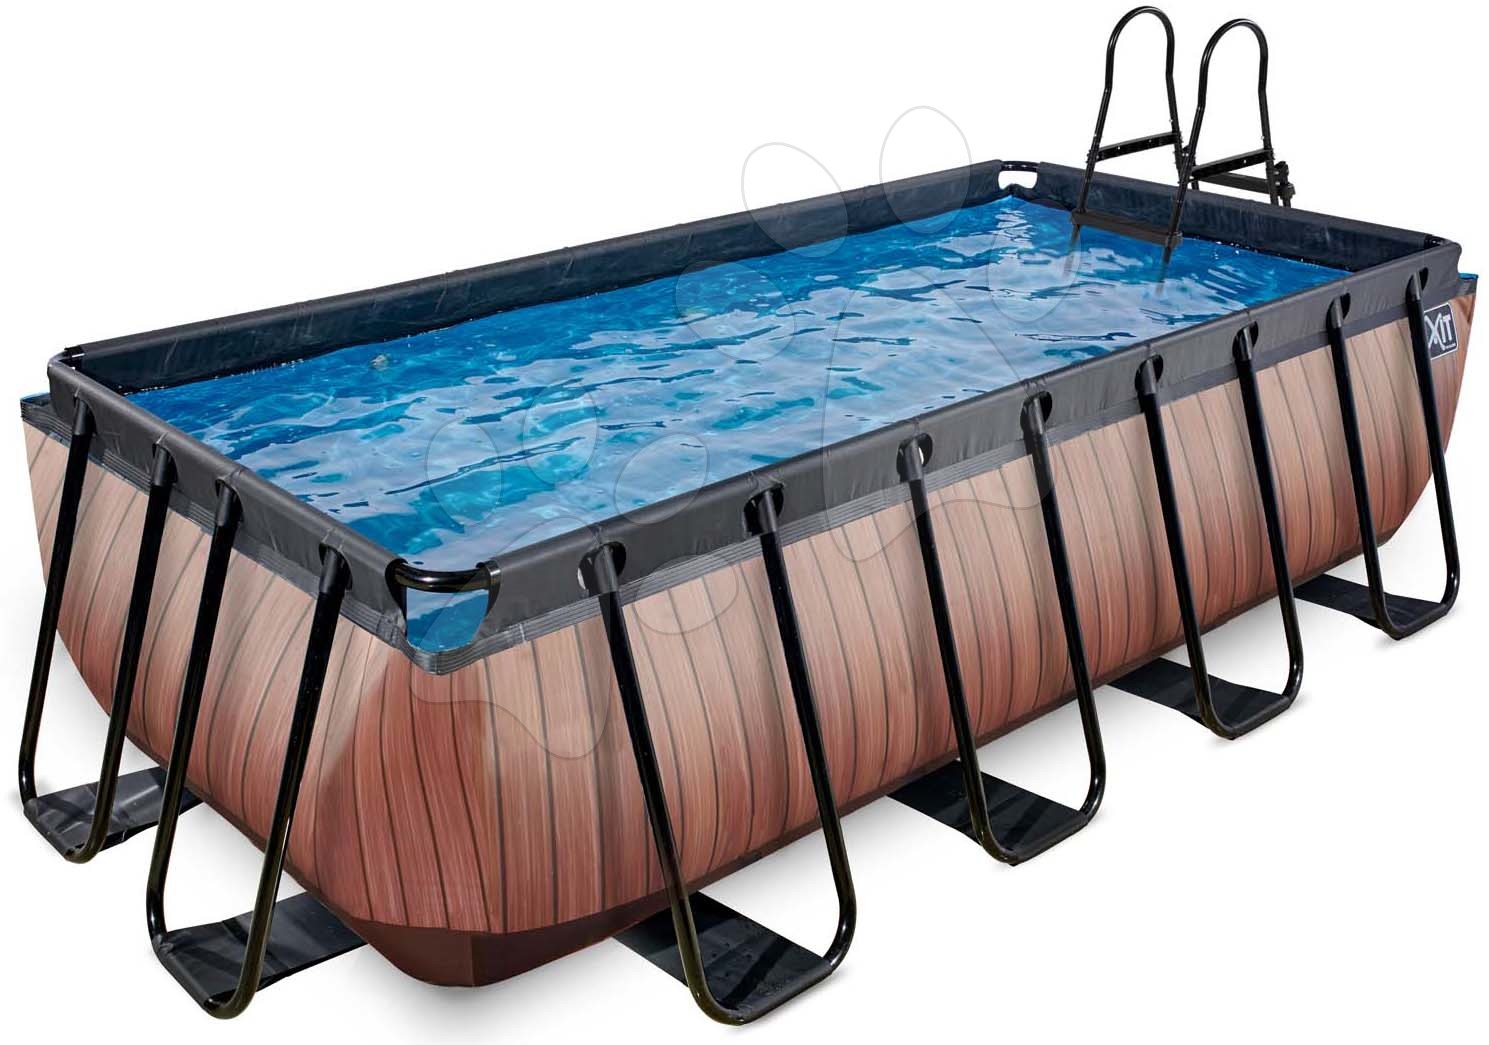 Medence homokszűrős vízforgatóval Wood pool Exit Toys acél medencekeret 400*200*100 cm barna 6 évtől